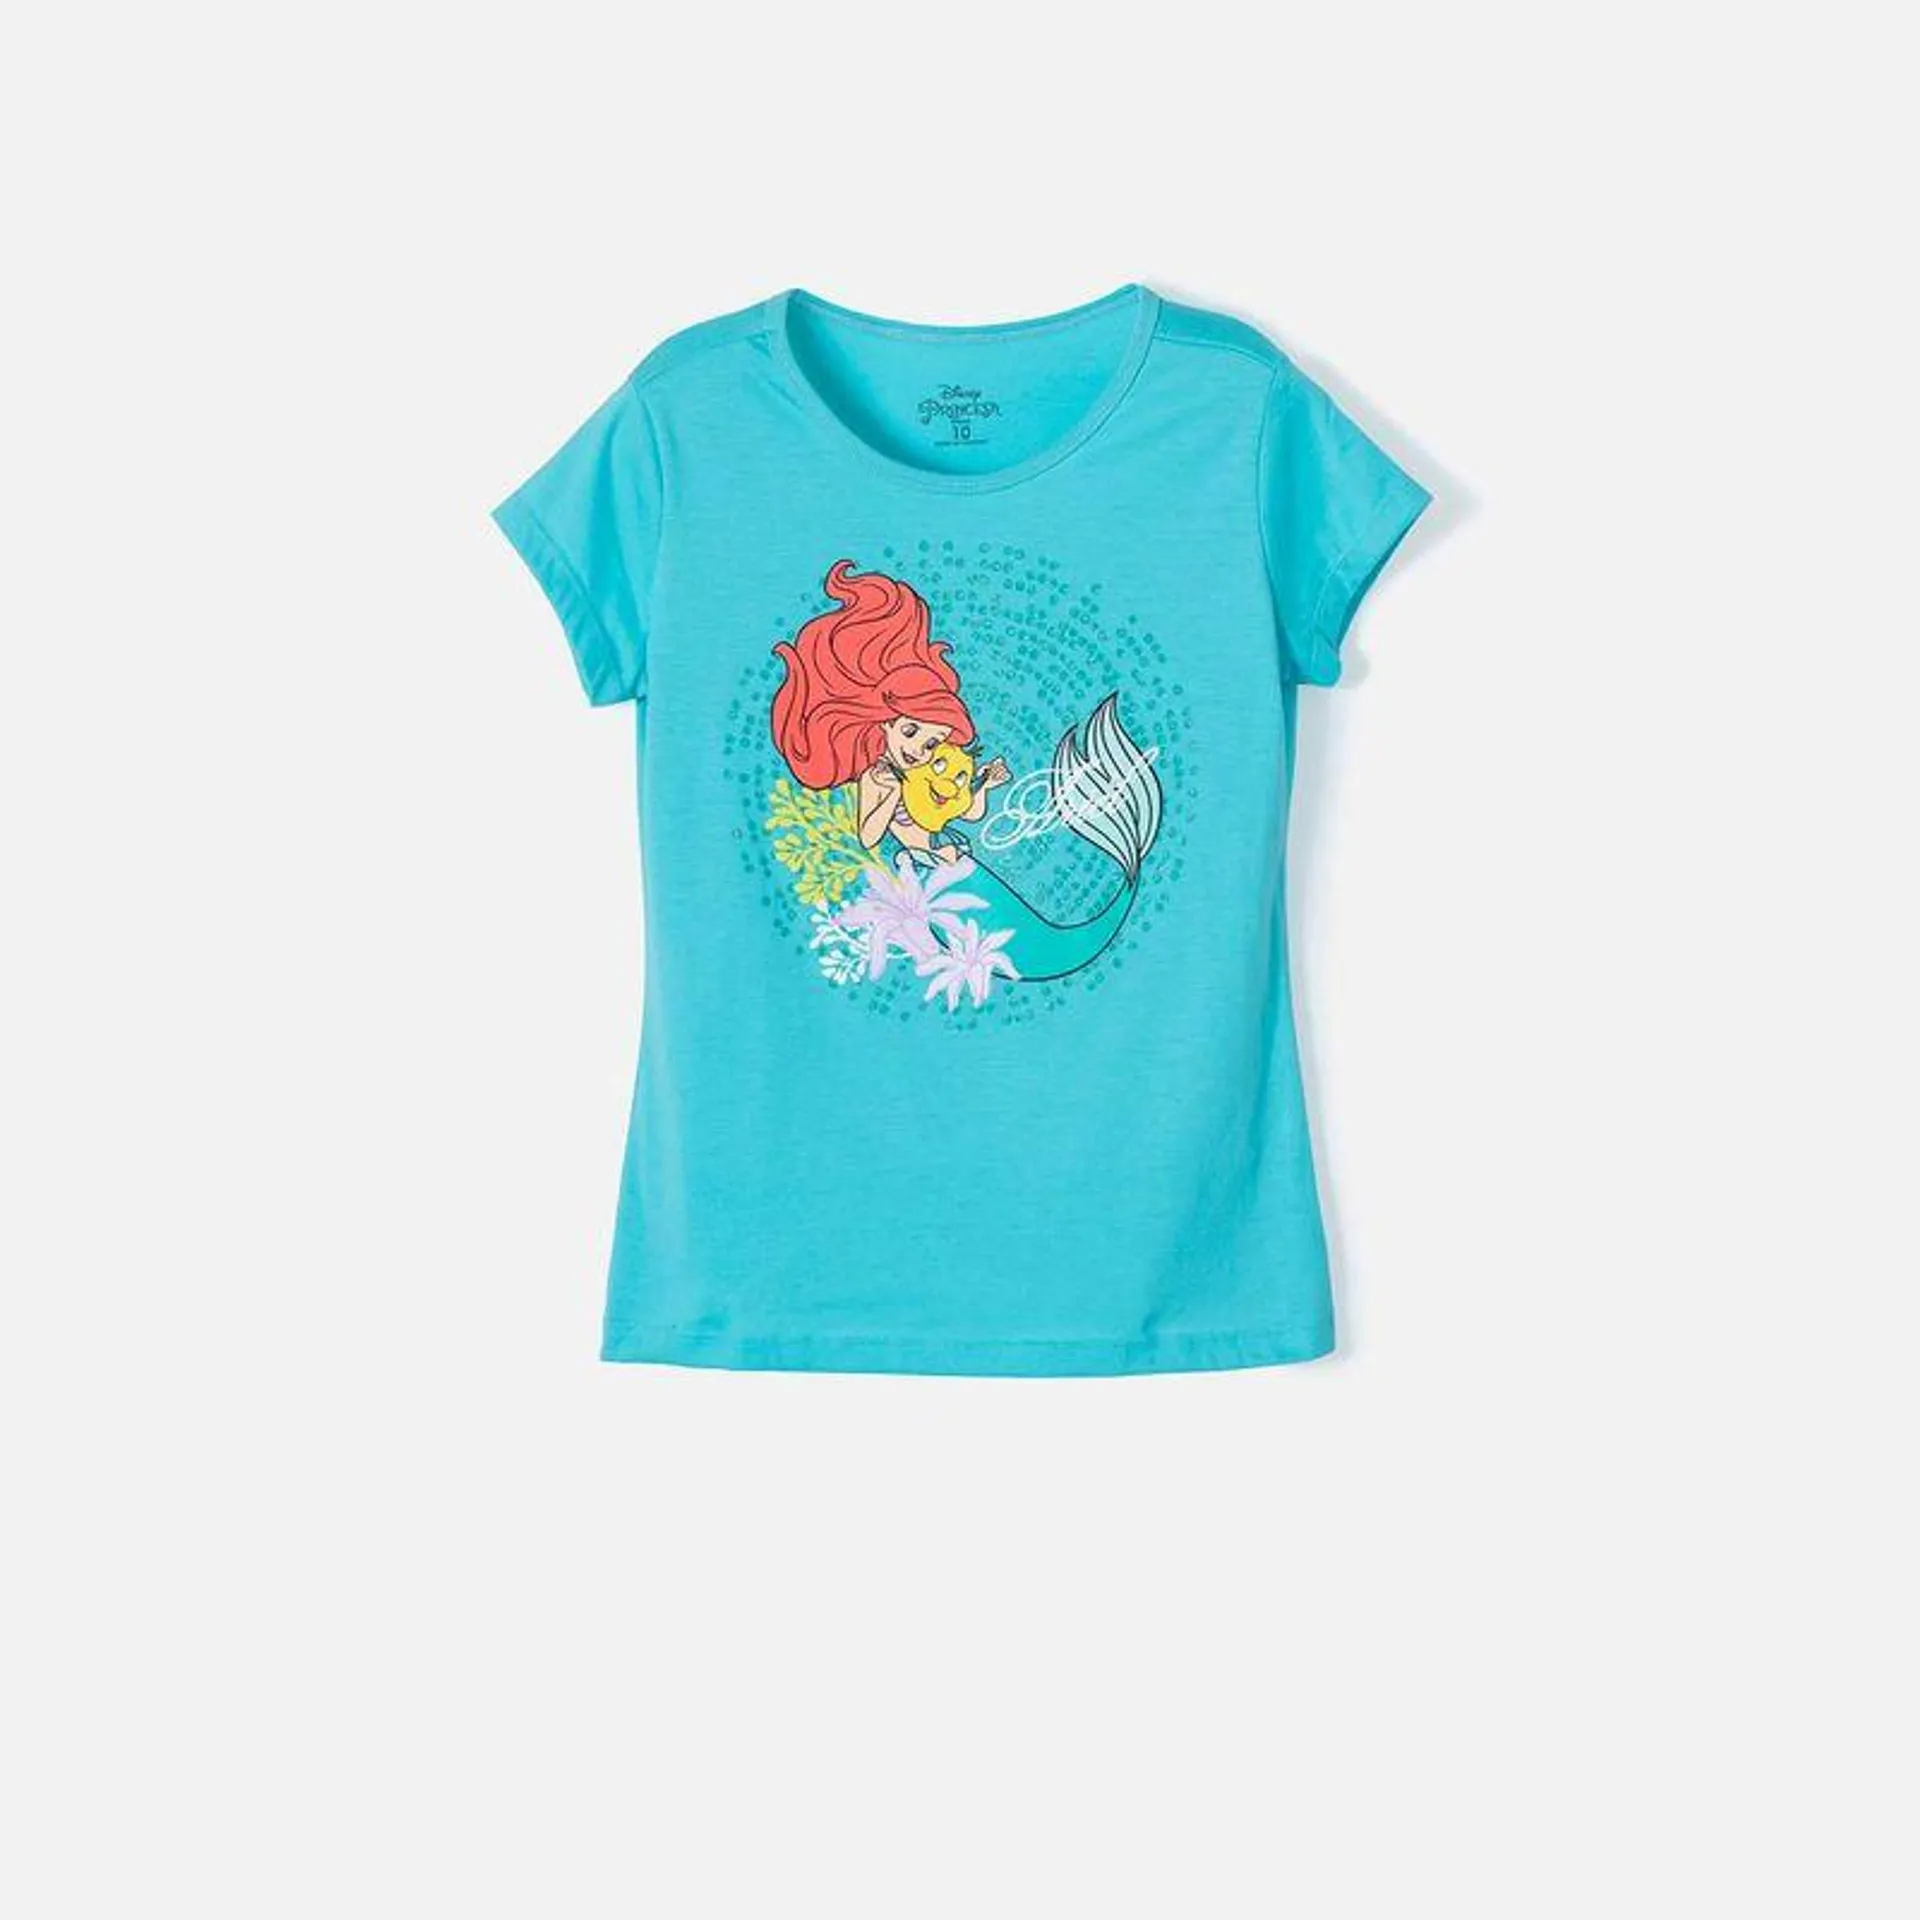 Camiseta de La Sirenita azul manga corta para niña